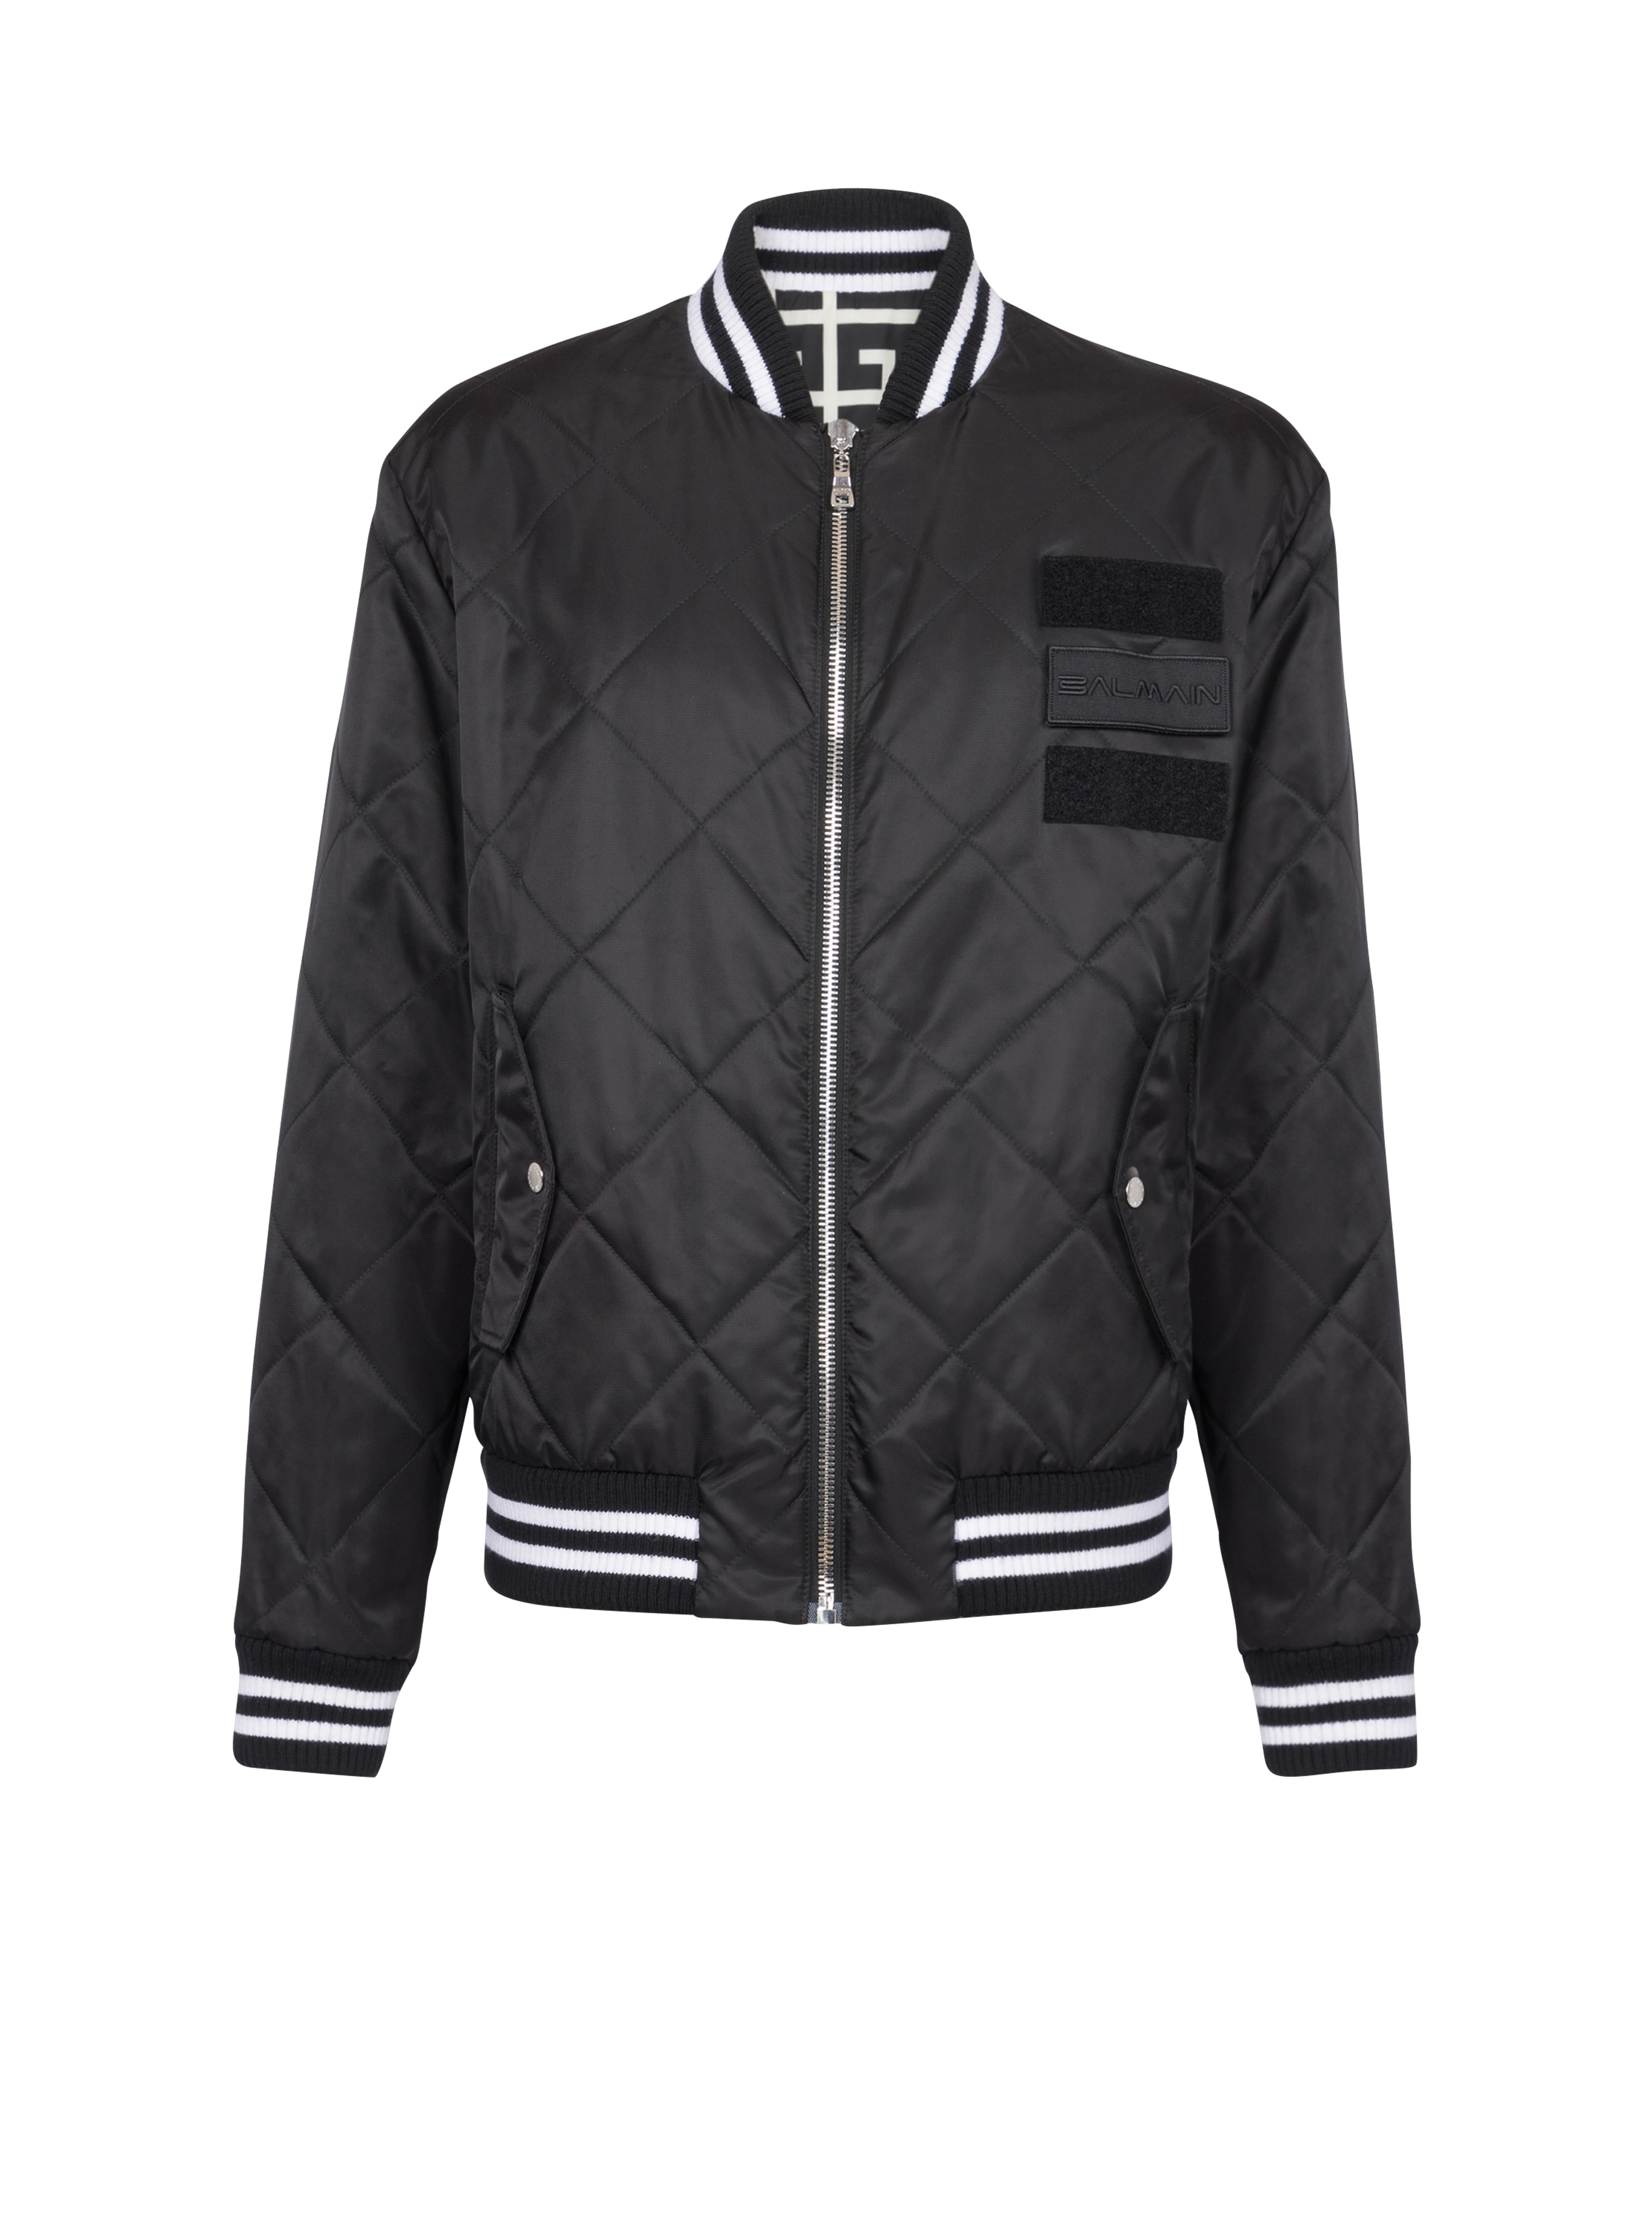 Reversible nylon bomber jacket with maxi monogram, black